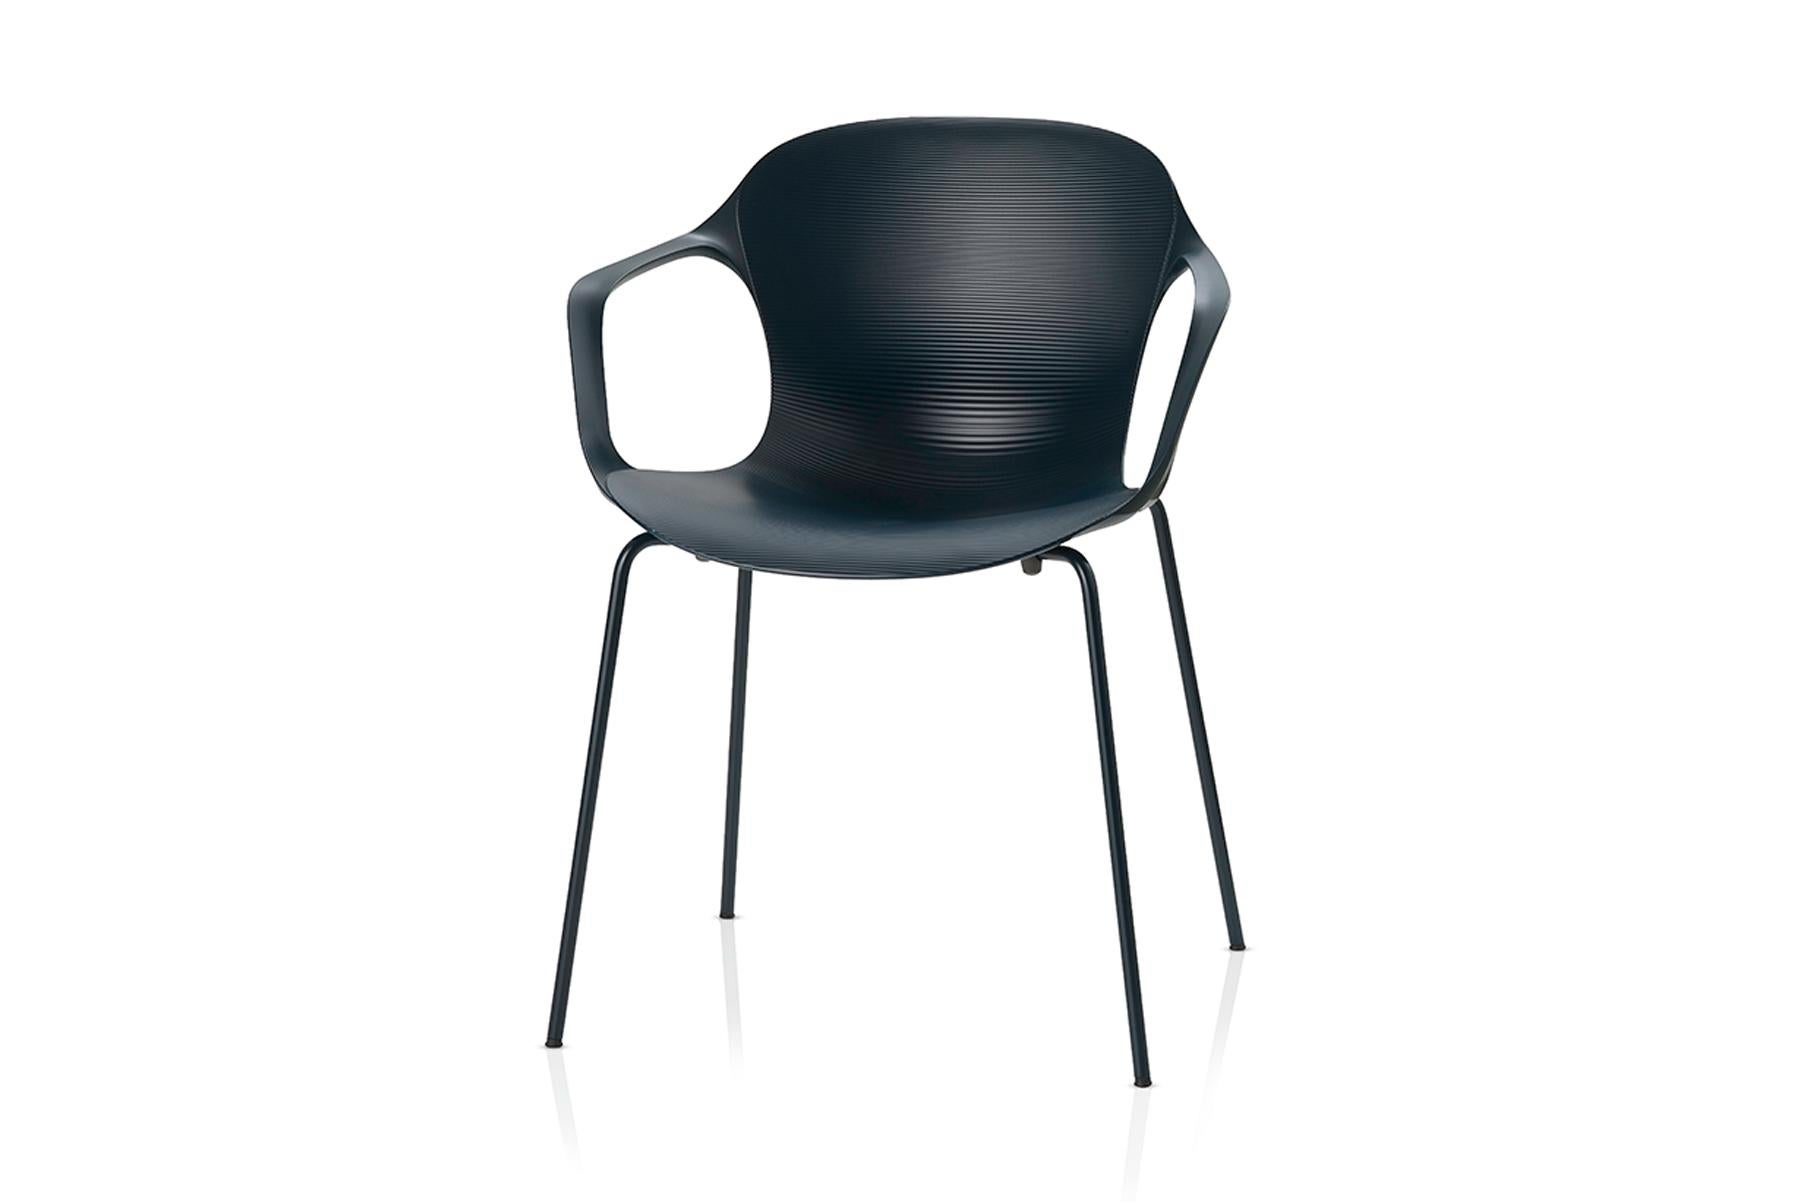 Der dänische Designer Kasper Salto hat den NAP-Stuhl für Fritz Hansen entworfen. Mit seiner geschwungenen Form ist der NAP-Stuhl feminin und elegant. Die Konturen der Nylonschale passen sich auf natürliche Weise der Form des menschlichen Körpers an,